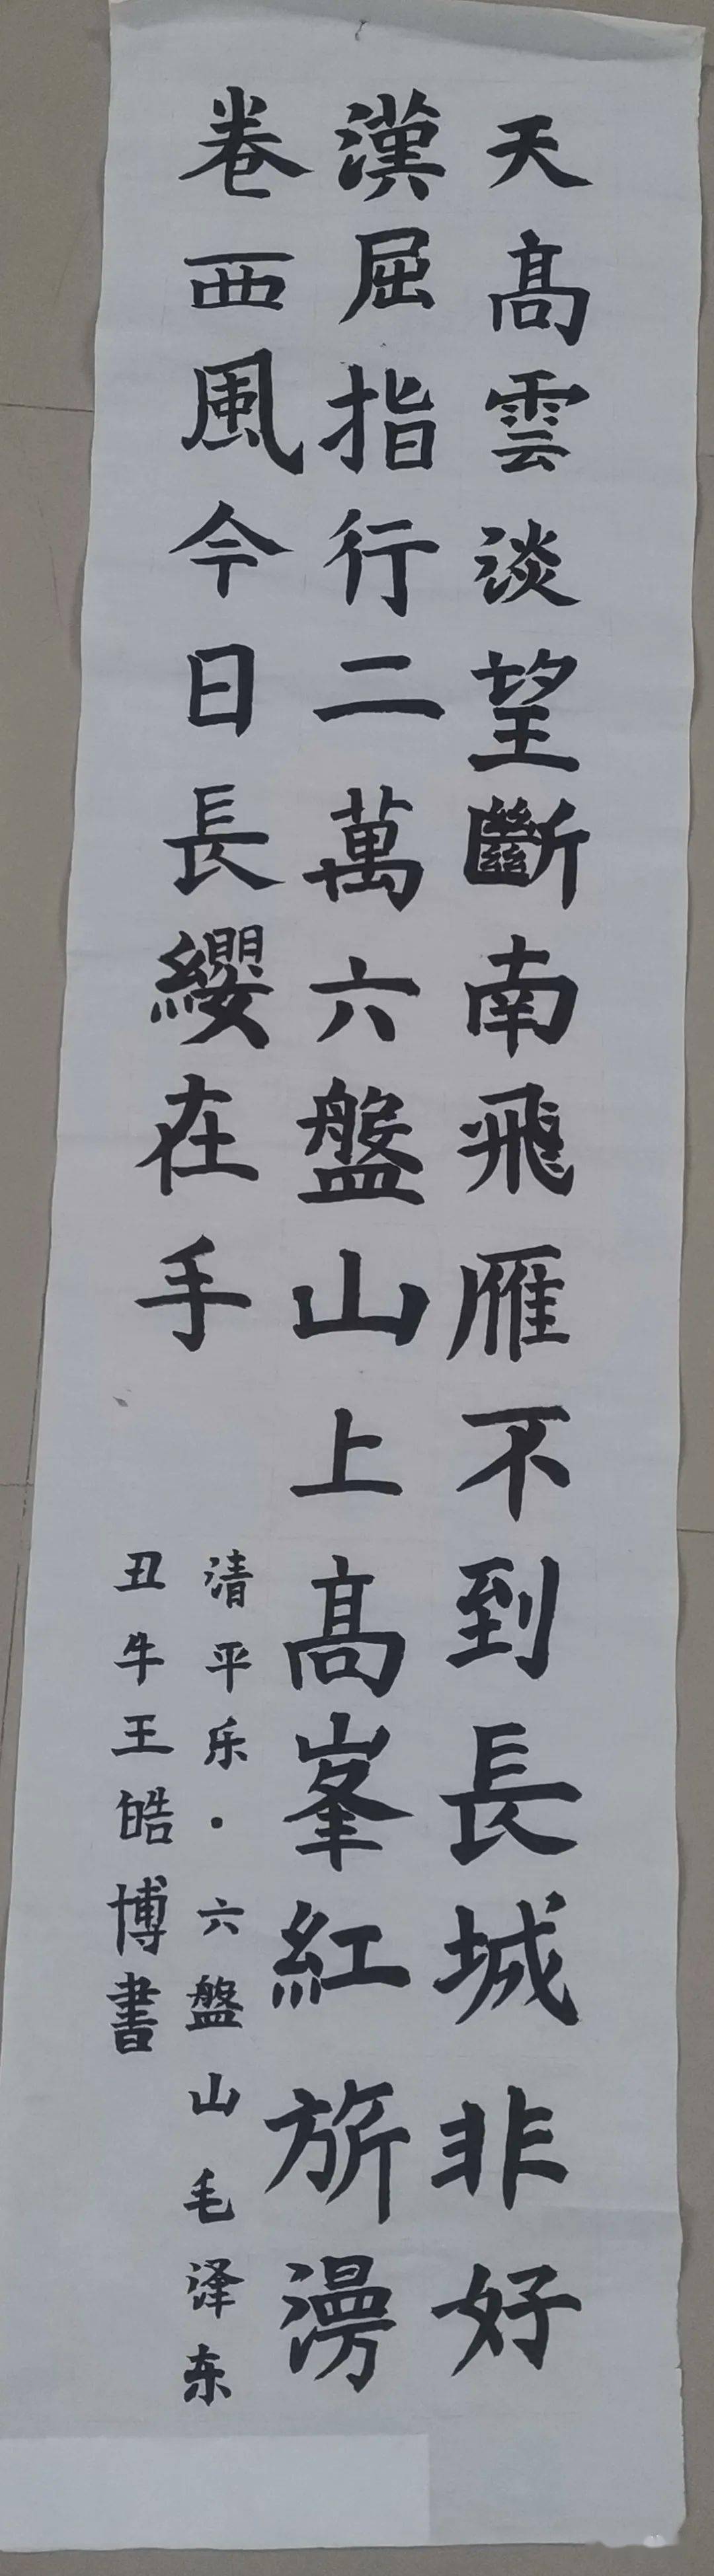 【六一专辑】泾川县"红领巾心向党"红色经典诗词书法作品来喽!